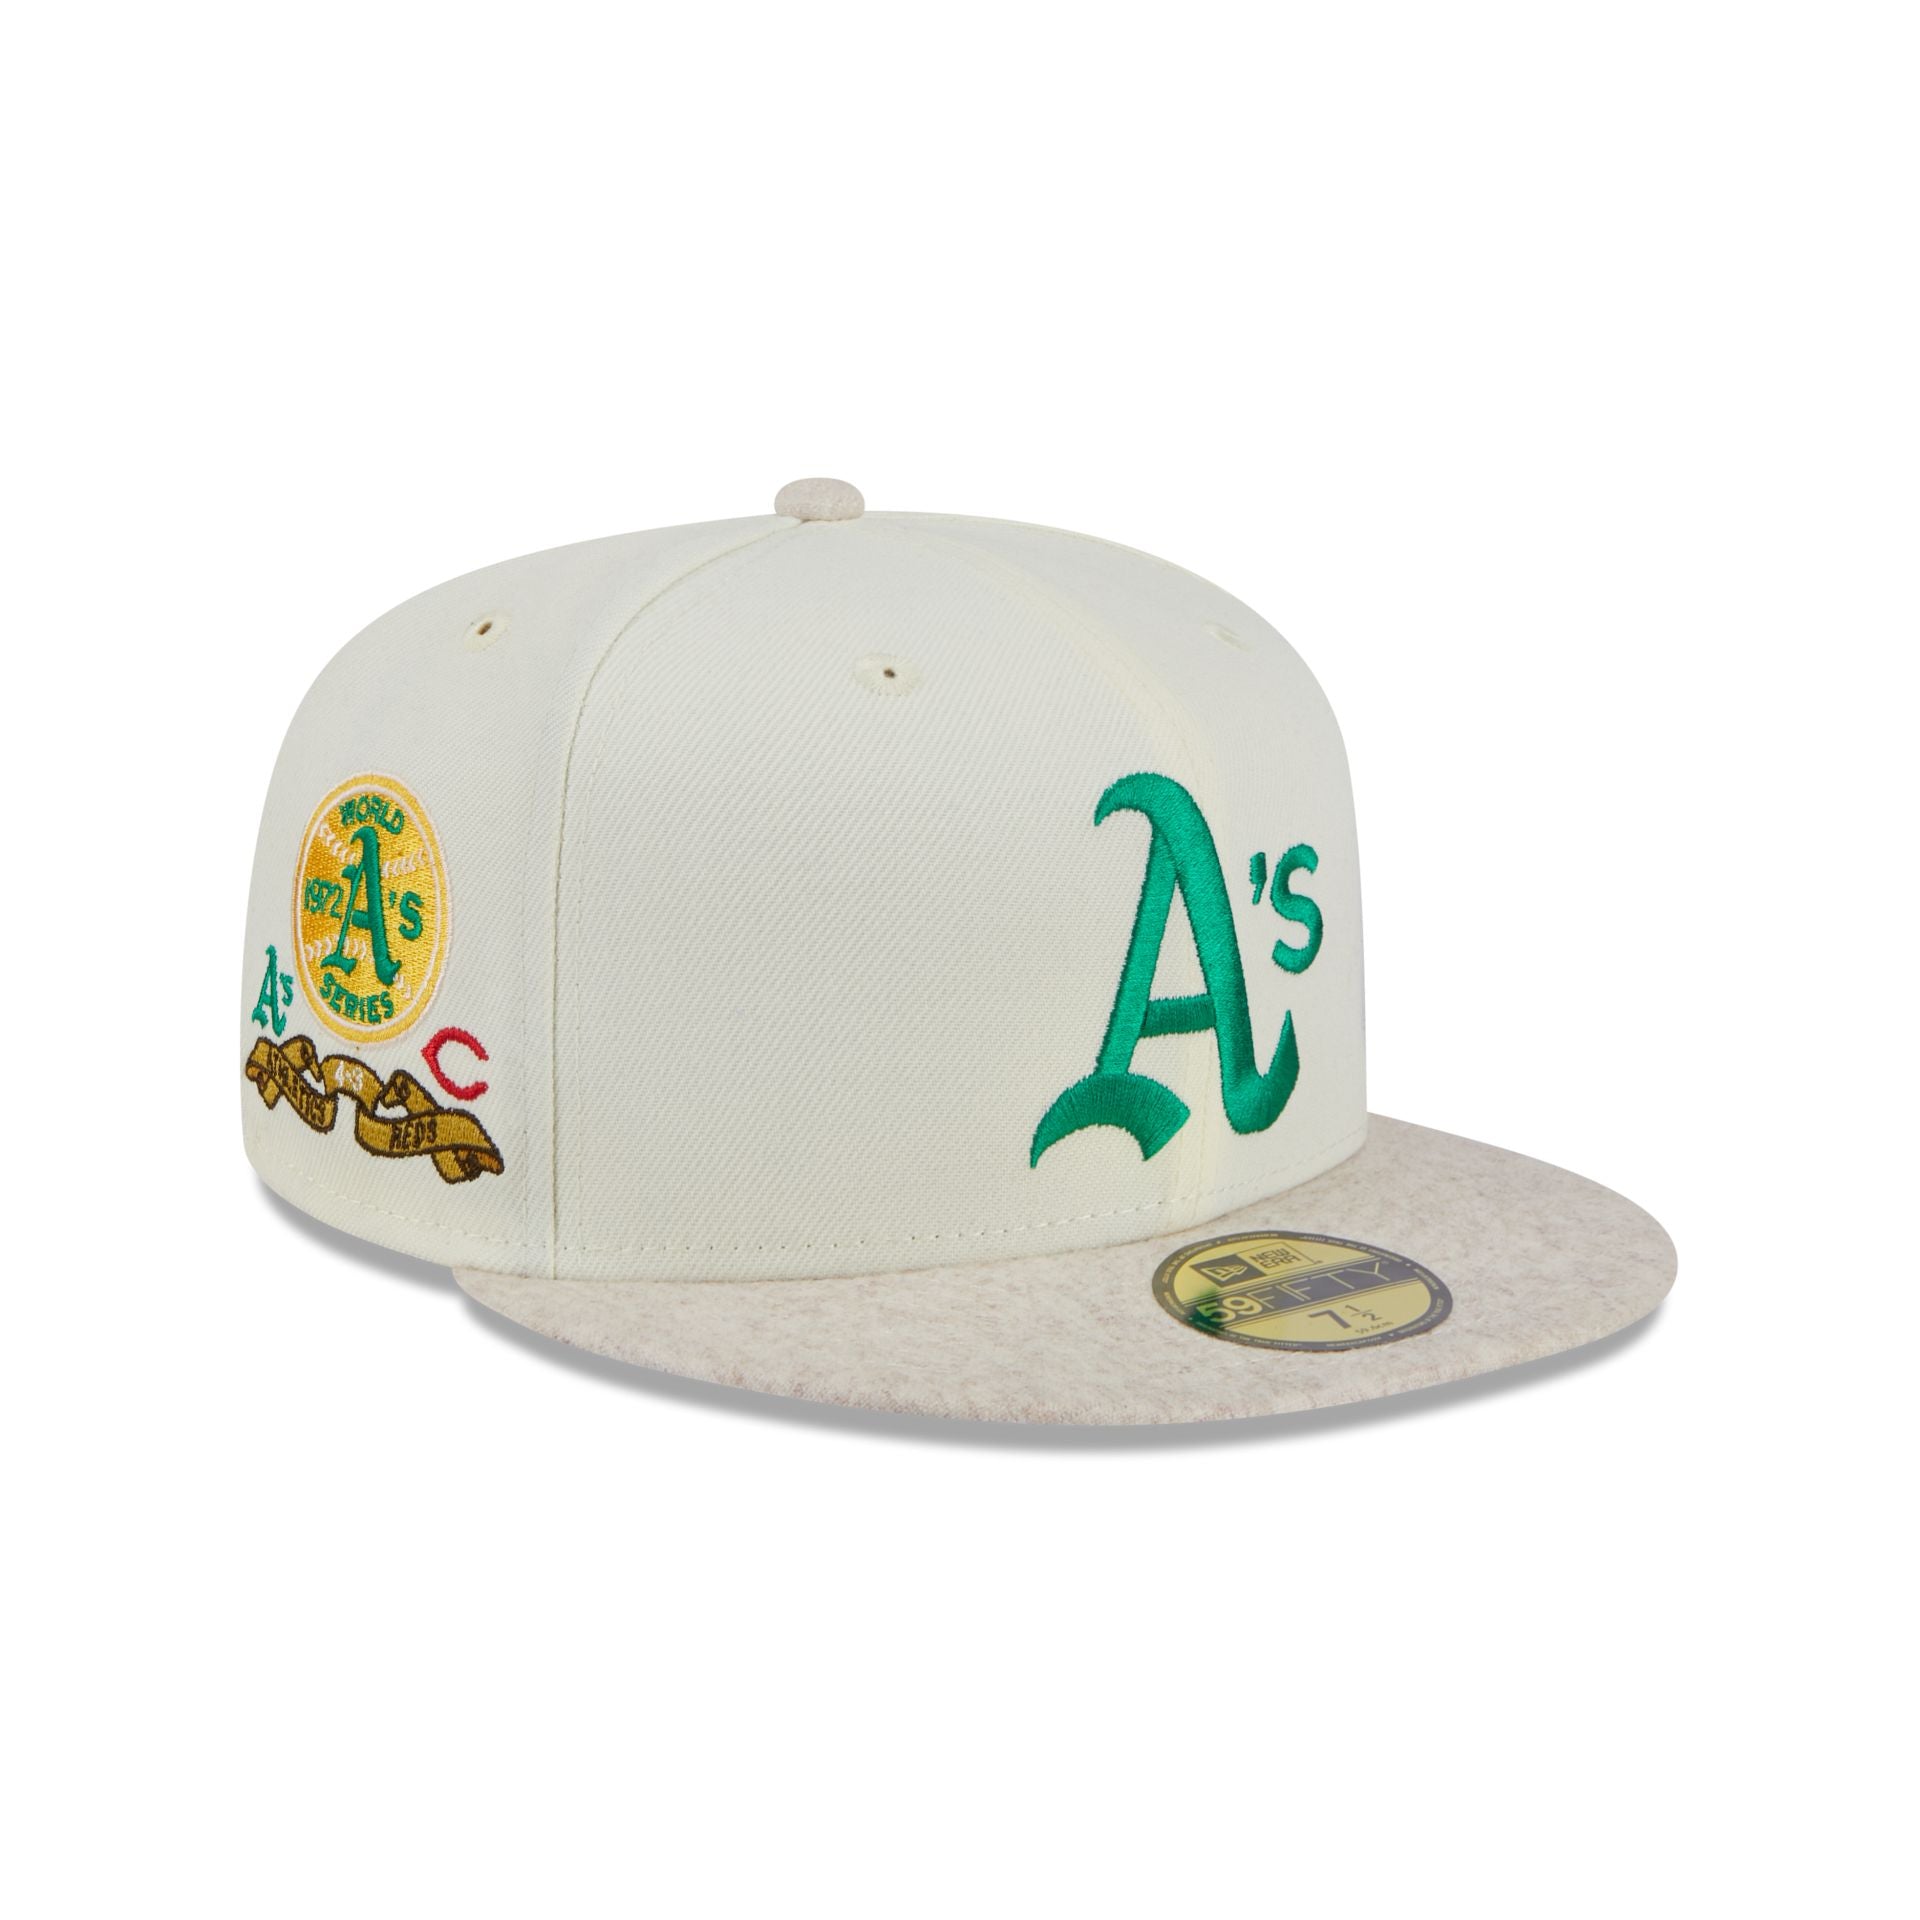 Oakland Athletics Caps – Cap New & Era Hats